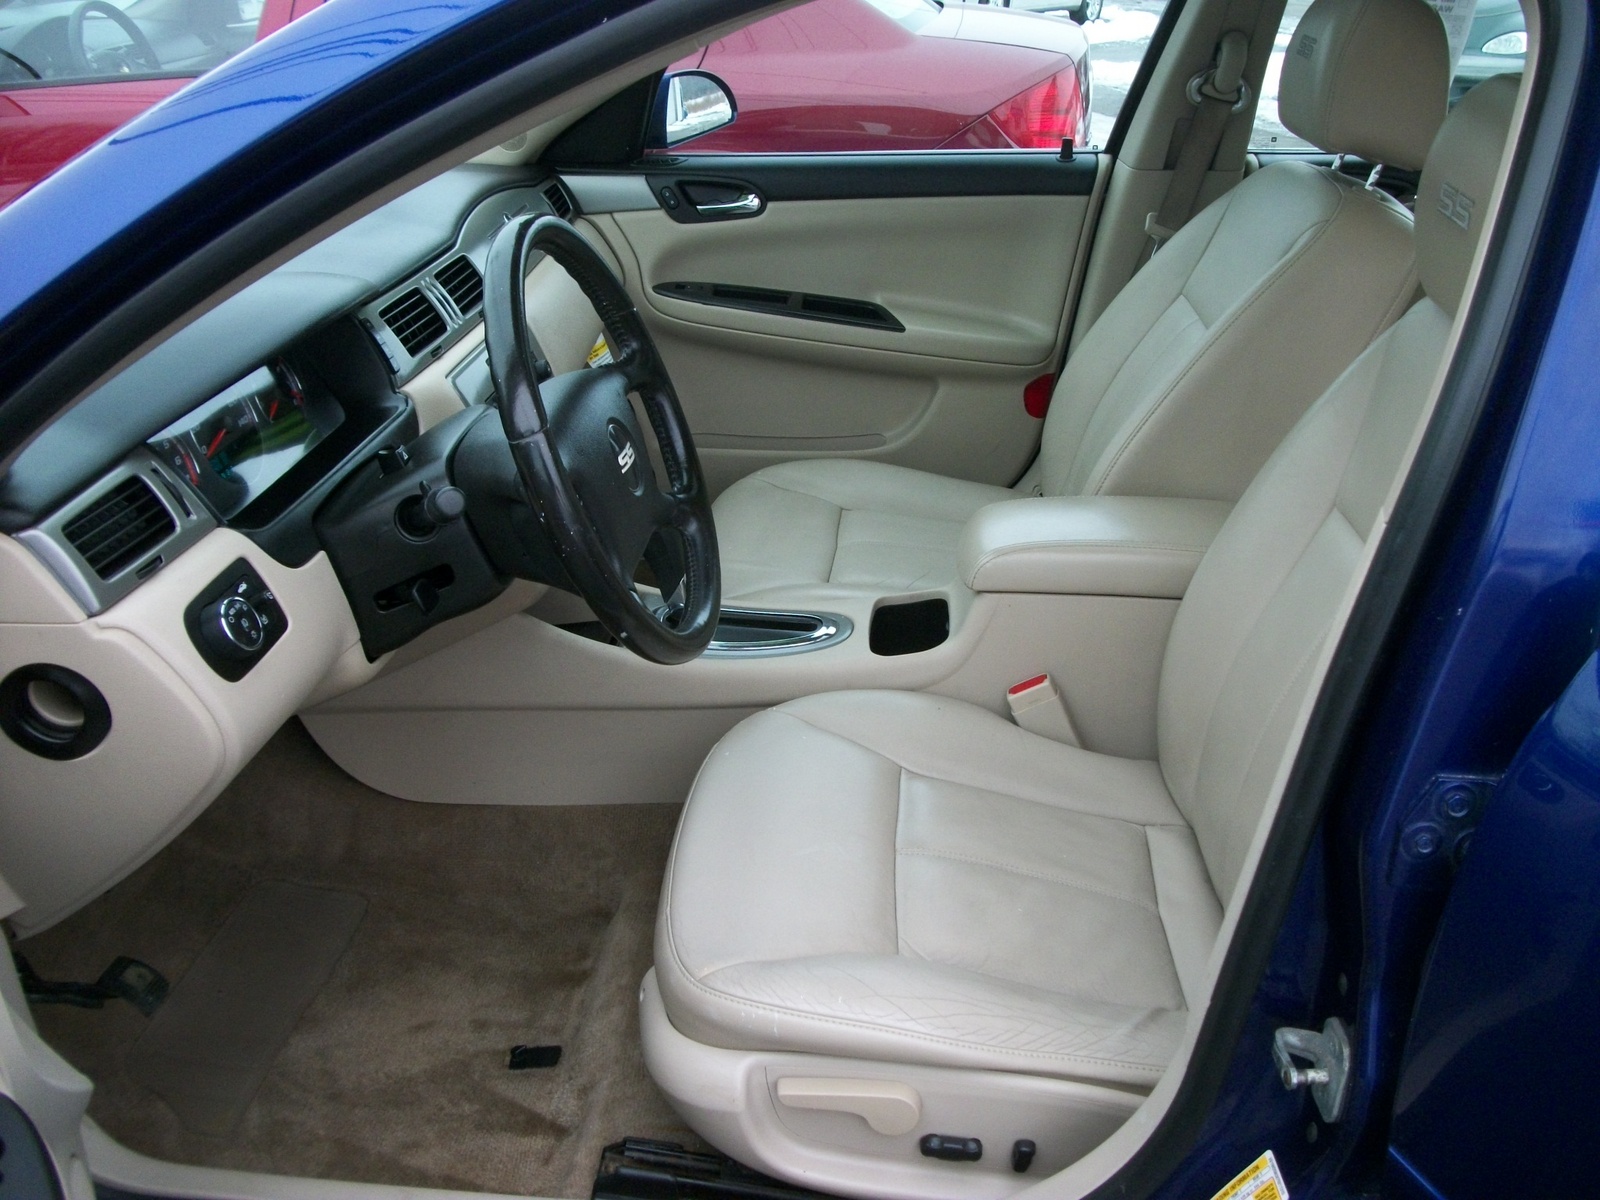 2007 Chevrolet Impala - Interior Pictures - CarGurus